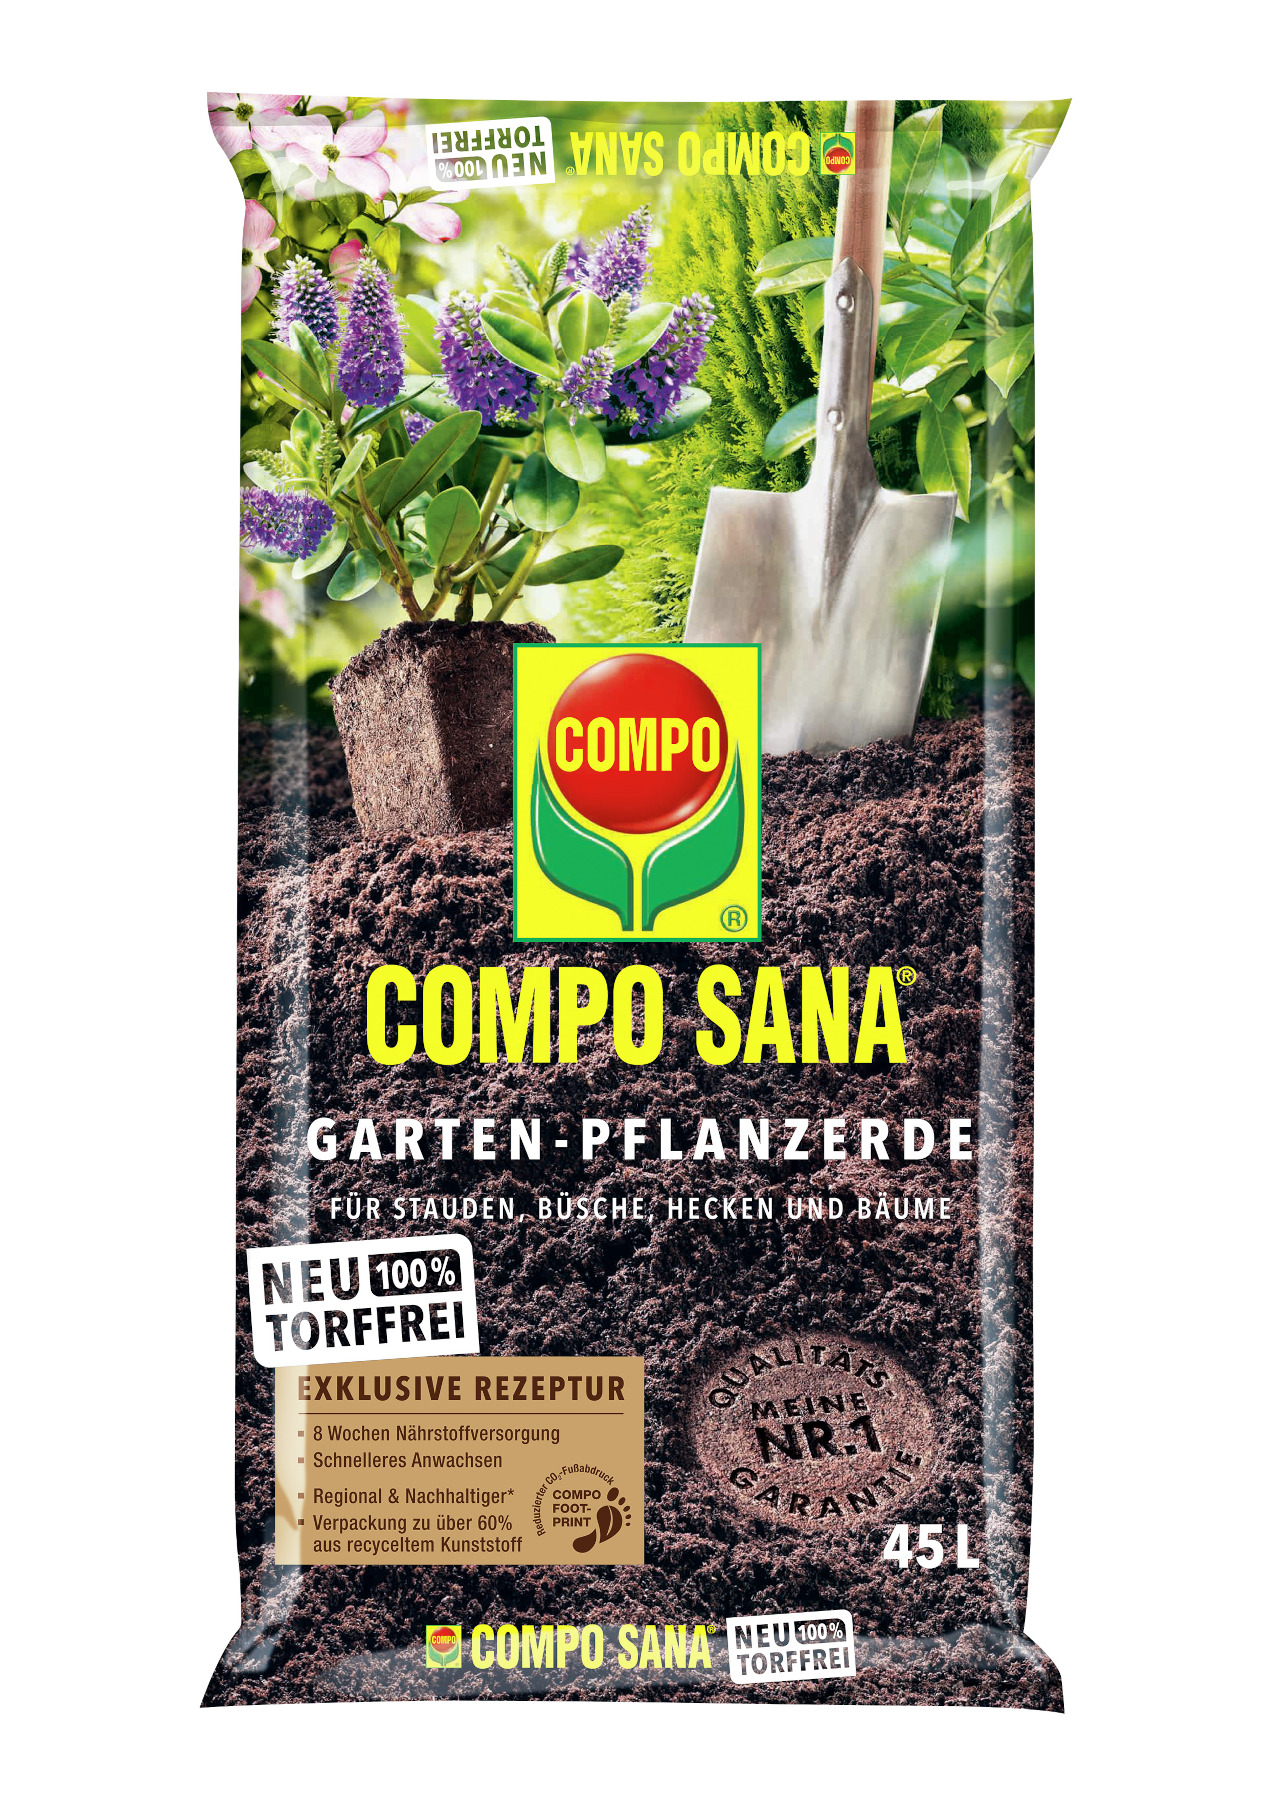 COMPO SANA Garten-Pflanzerde, 45 Liter